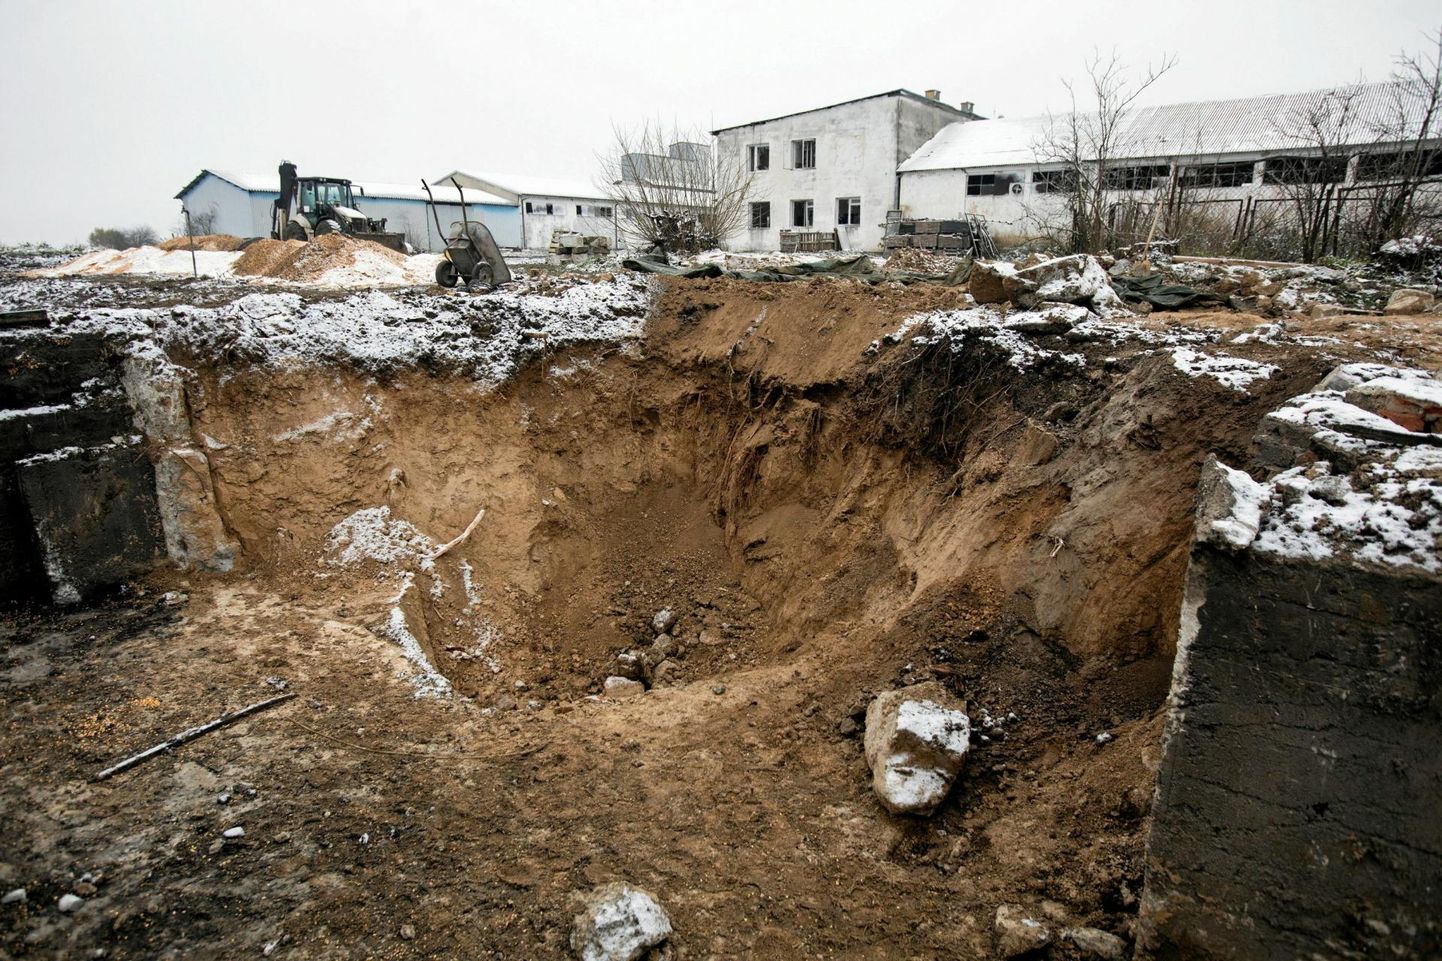 Raketiplahvatuse kraater ja purustused Poola idapiiri lähistel Przewodówi külas ligi nädal pärast seda, kuid sinna kukkus Venemaa ulatusliku raketirünnaku tõrjumise käigus välja tulistatud Ukraina õhutõrjerakett.